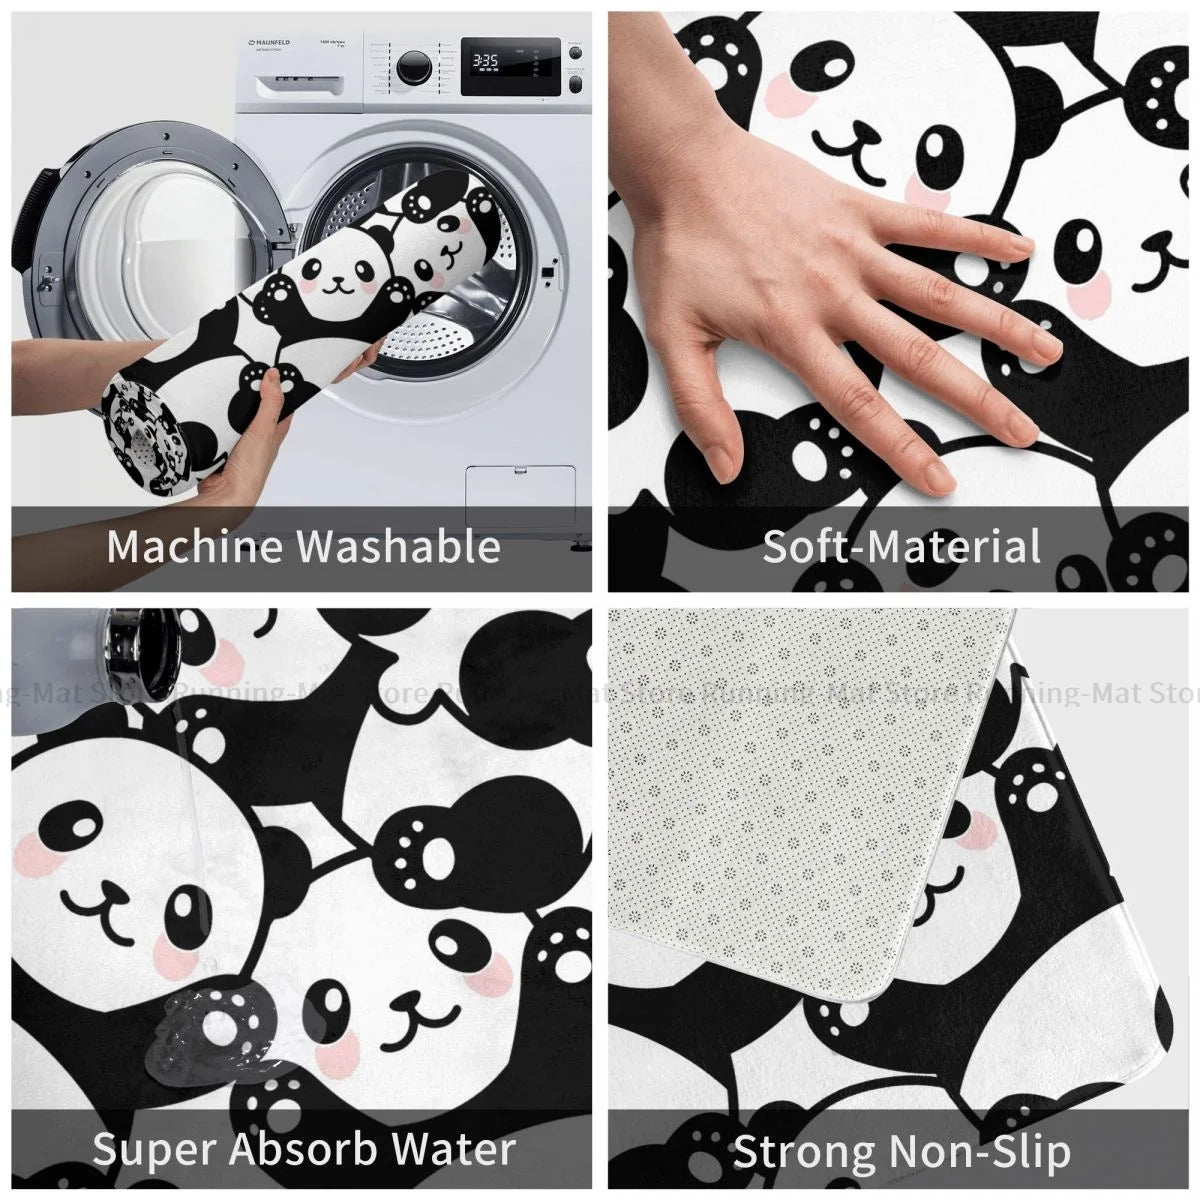 Playful Pandas Non-Slip Bath Mat